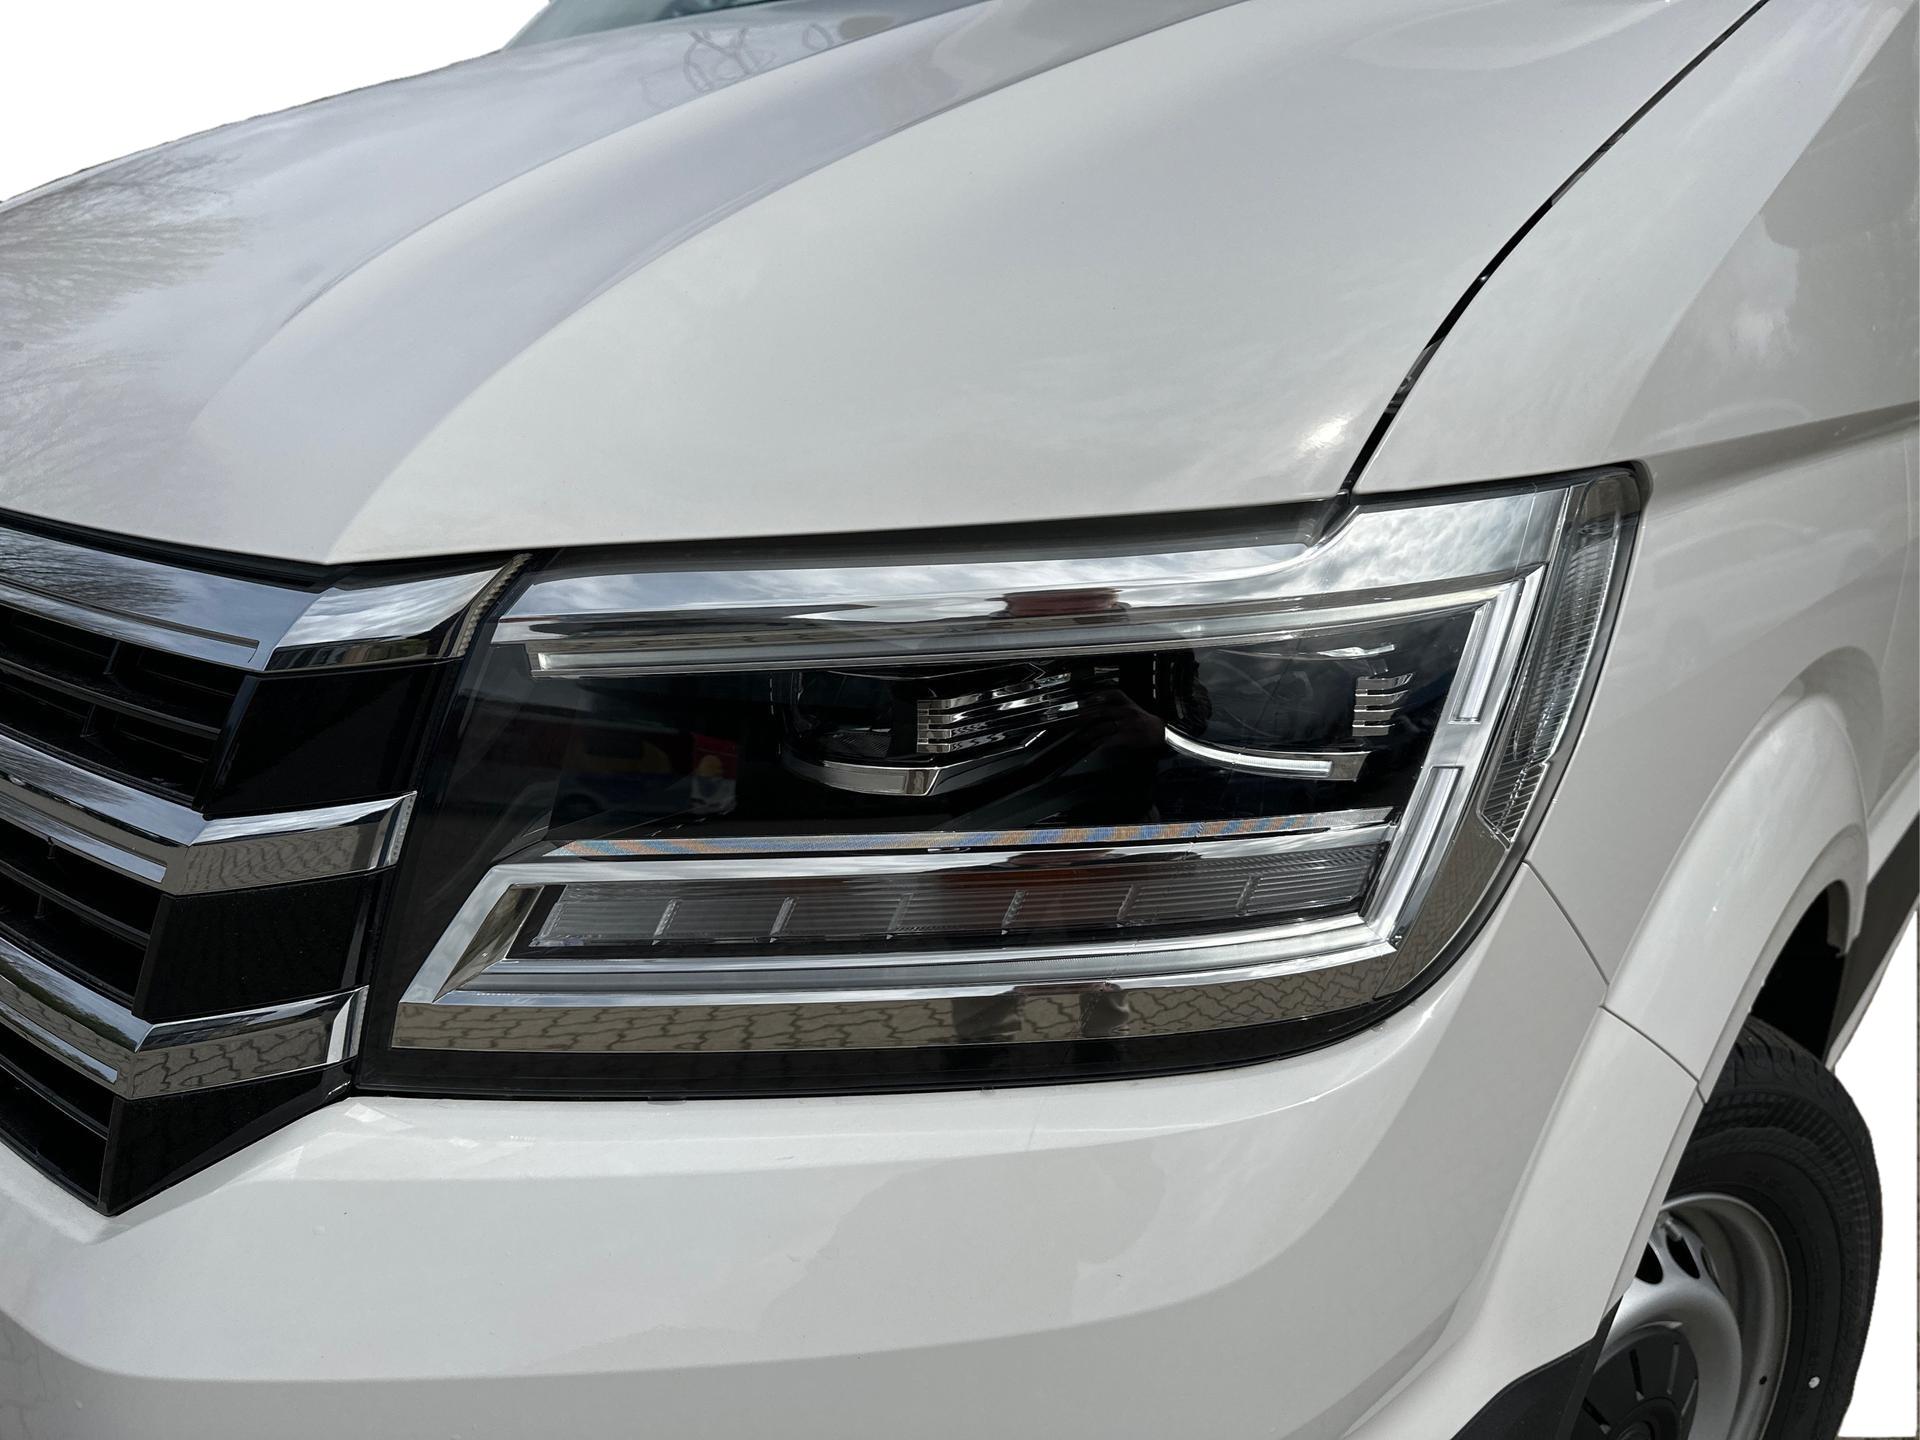 VW ID.4 LED Zusatzscheinwerfer vorne Nebelscheinwerfer